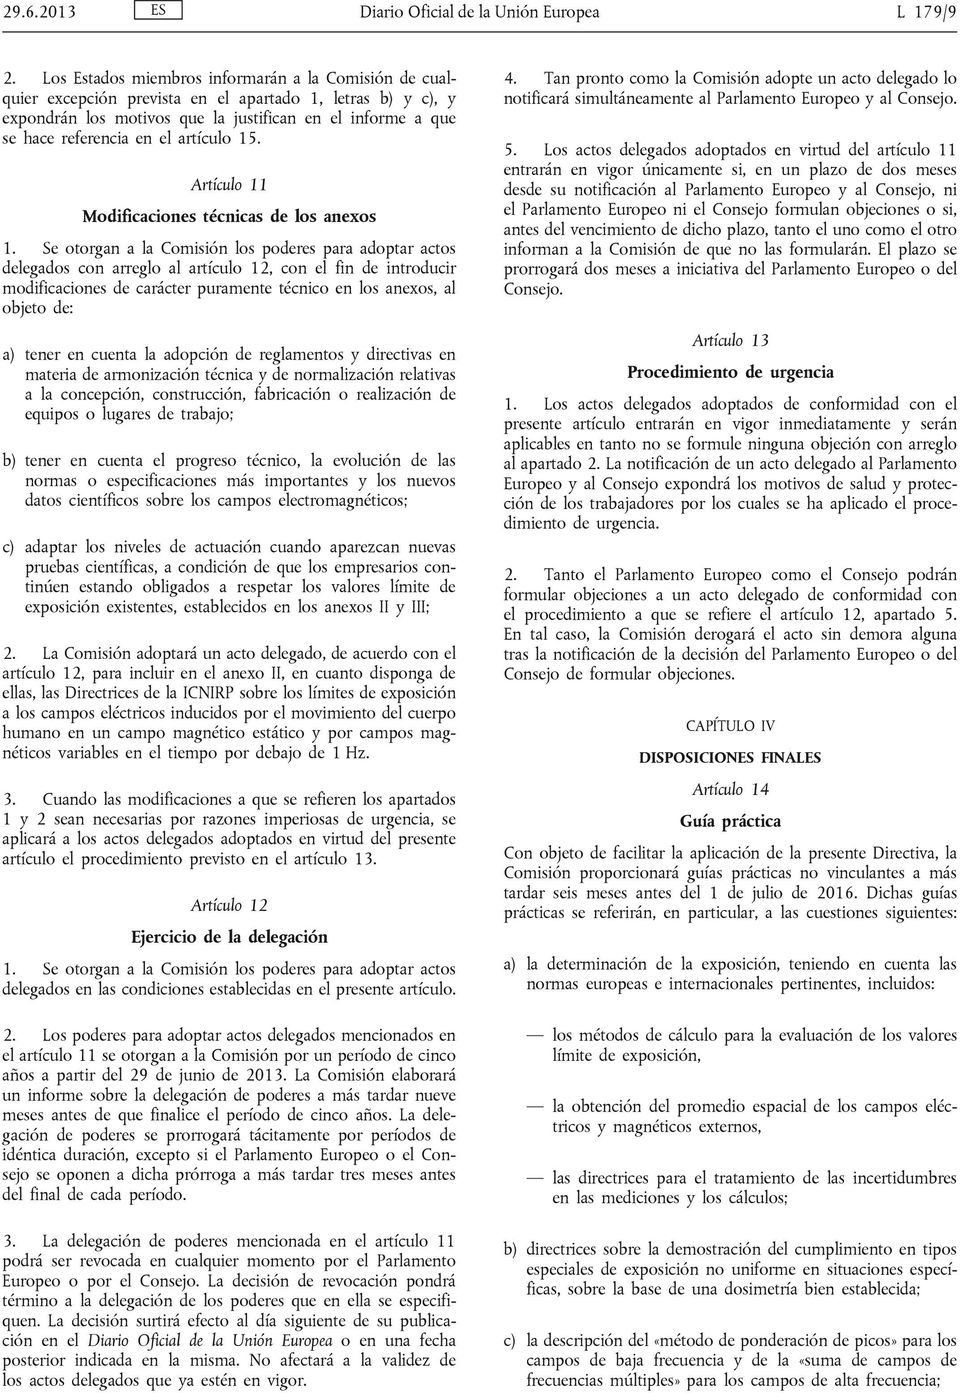 artículo 15. Artículo 11 Modificaciones técnicas de los anexos 1.